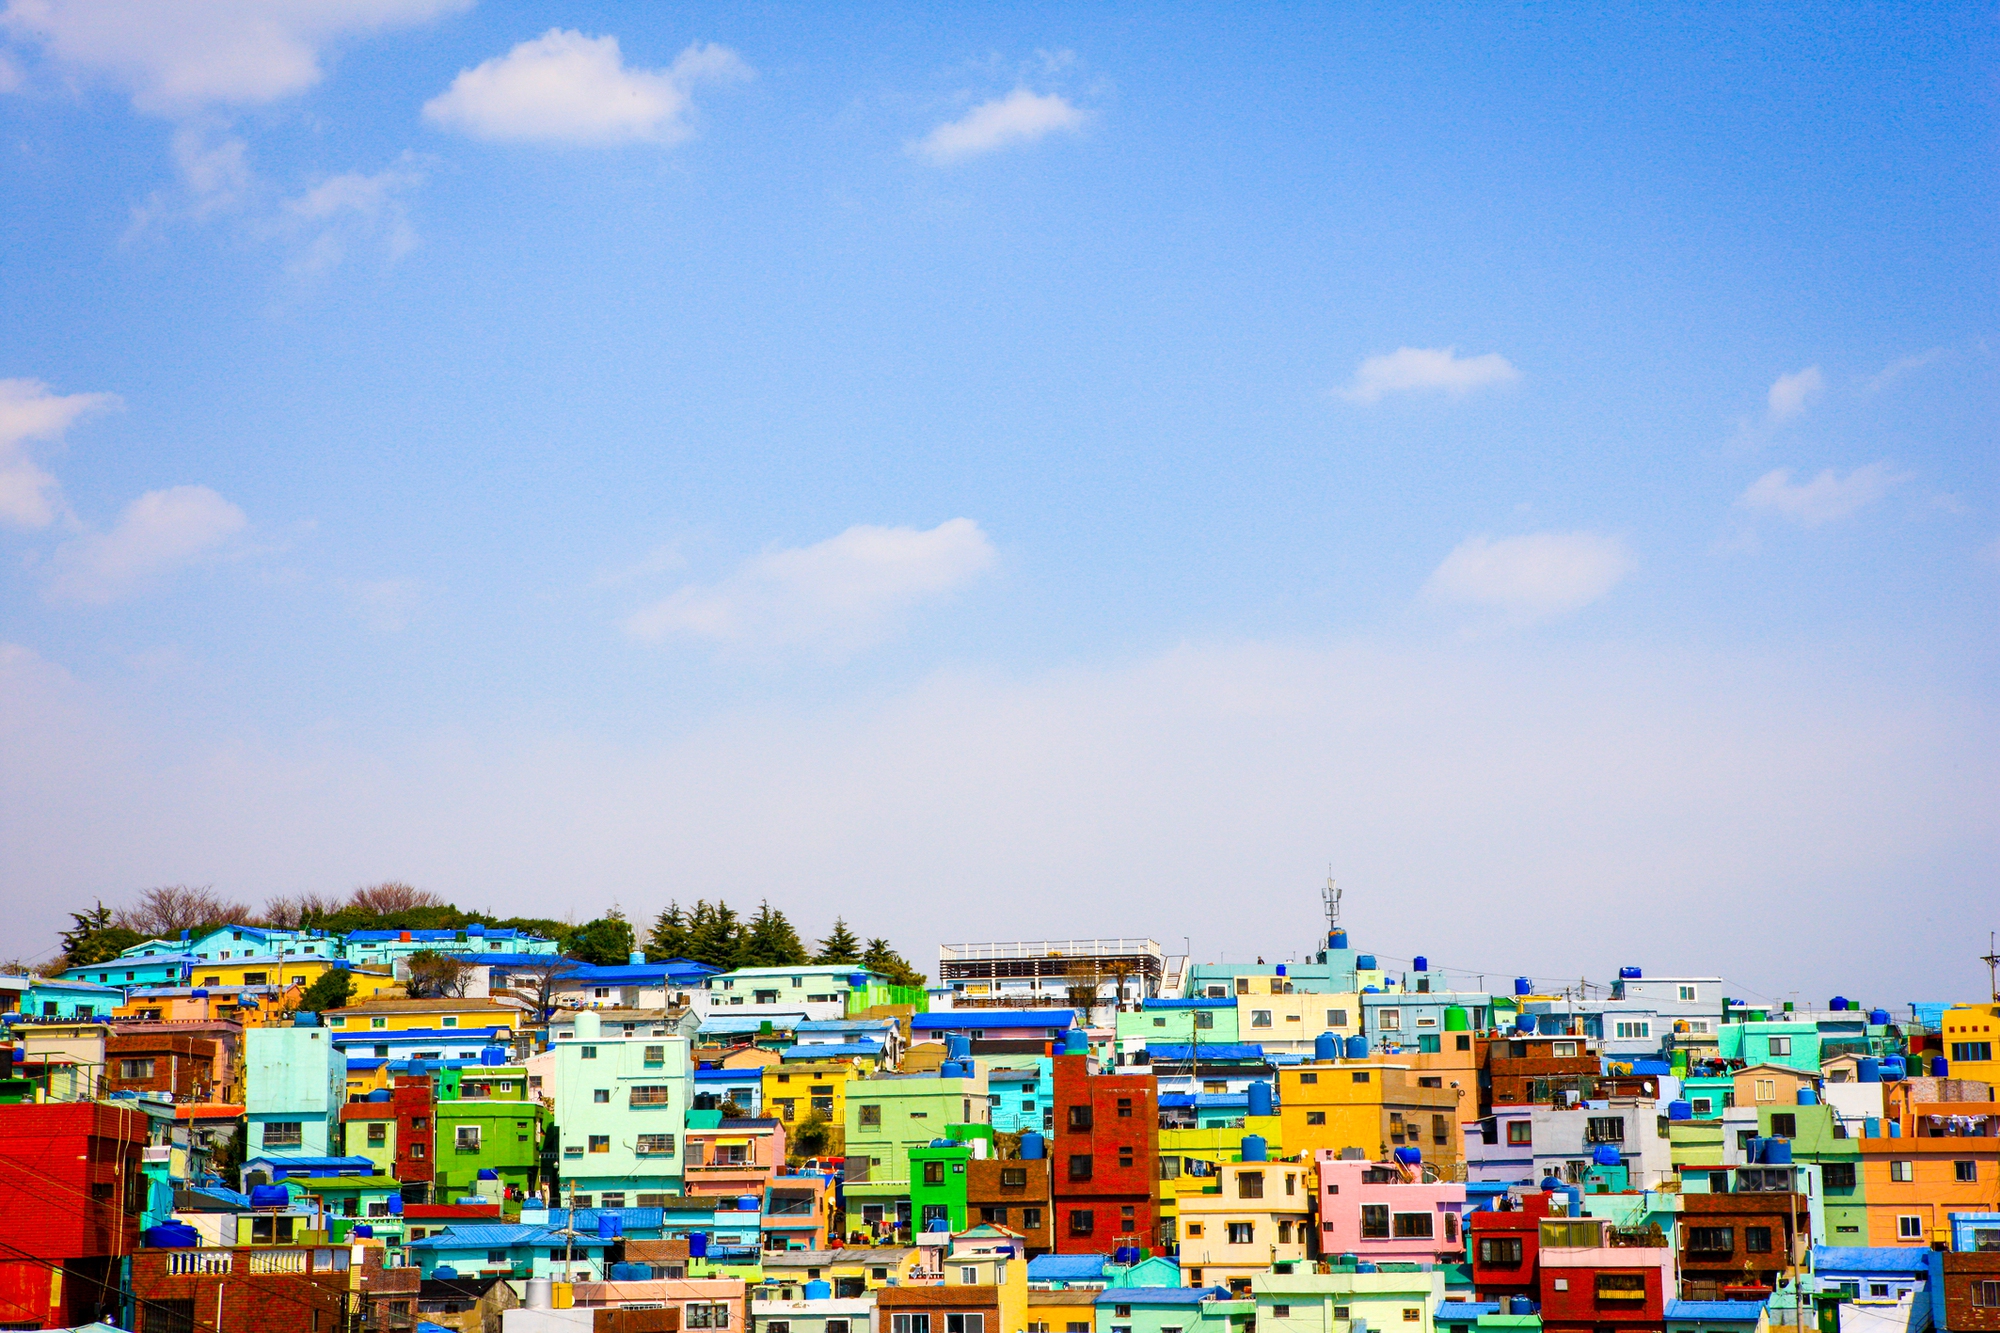 Có gì đặc biệt ở ngôi làng sắc màu được mệnh danh là 'Santorini của Hàn Quốc'? - Ảnh 3.